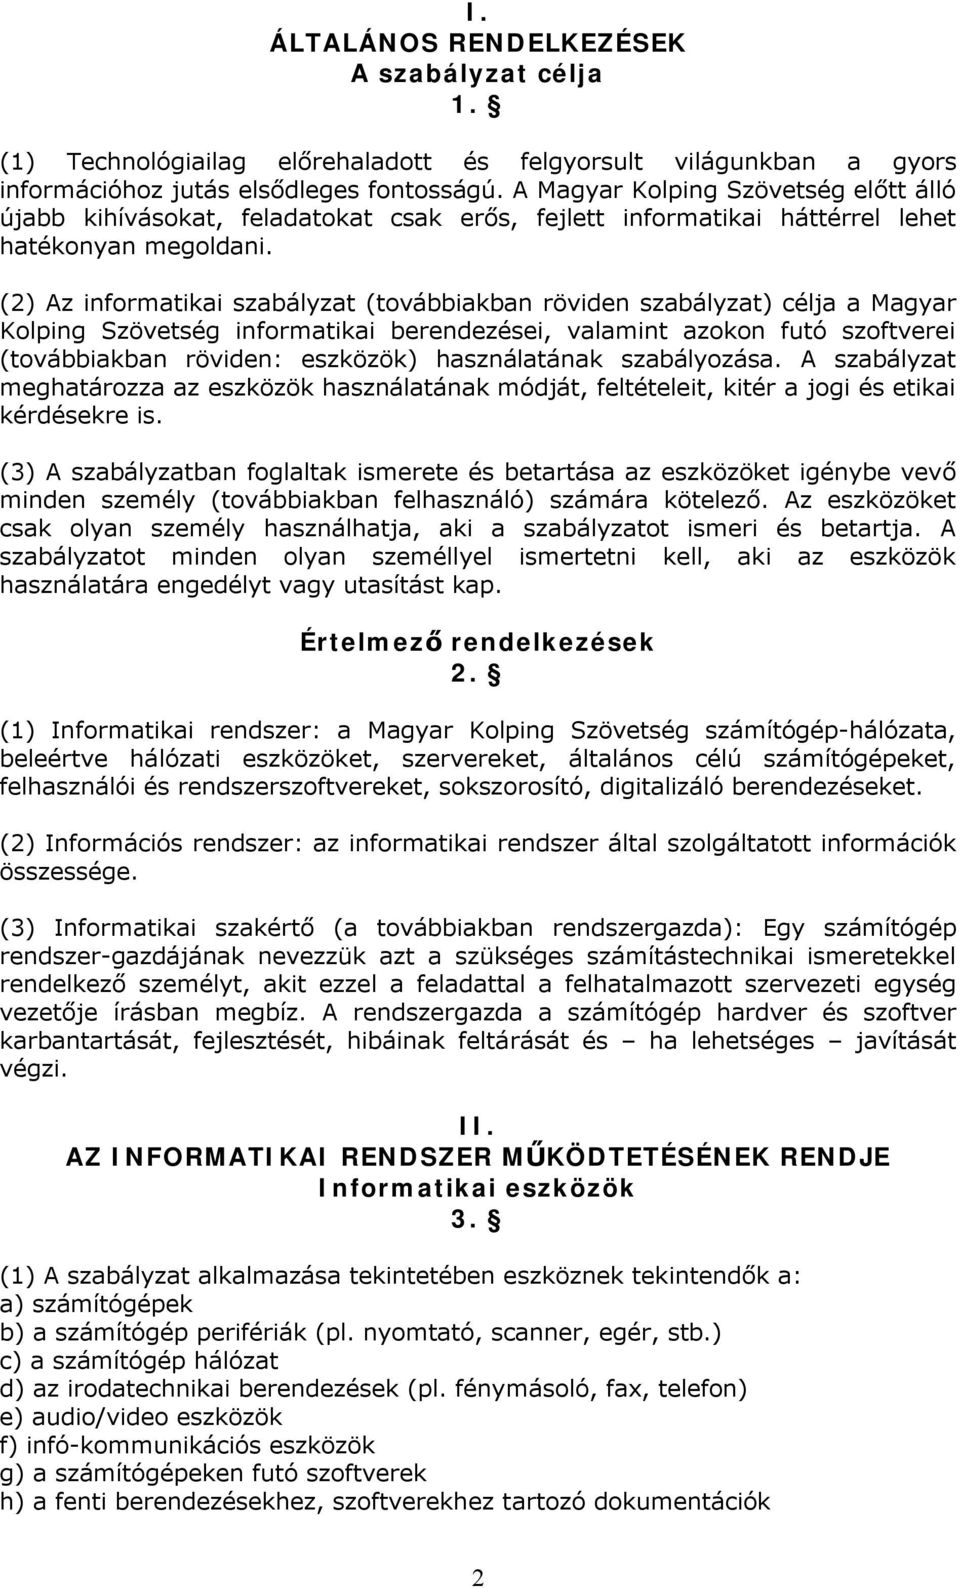 (2) Az informatikai szabályzat (továbbiakban röviden szabályzat) célja a Magyar Kolping Szövetség informatikai berendezései, valamint azokon futó szoftverei (továbbiakban röviden: eszközök)